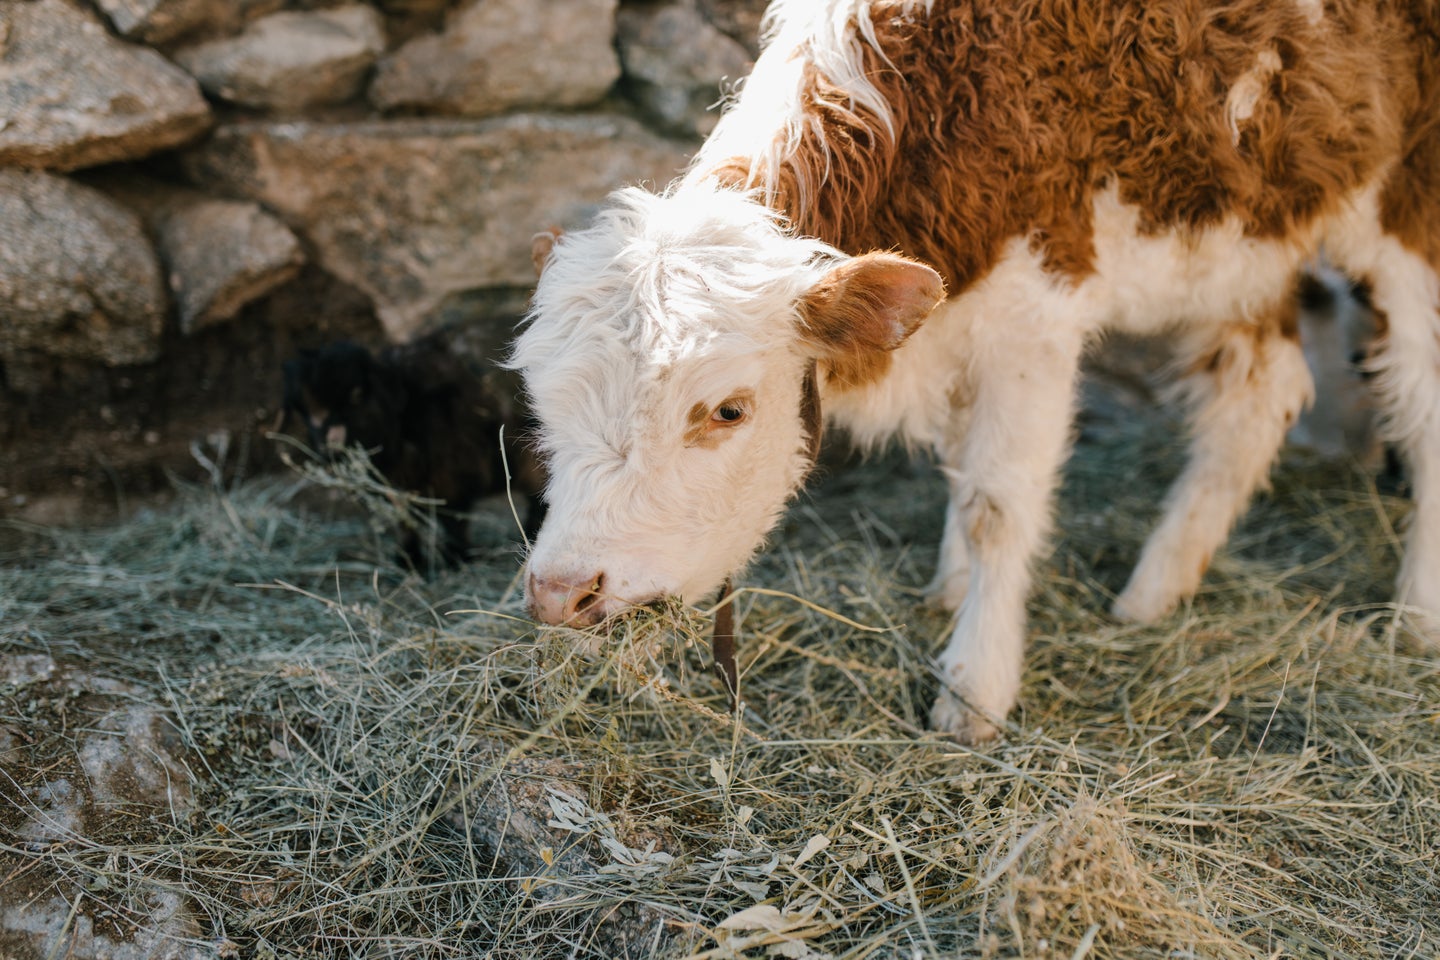 Cow eating hay at farm.